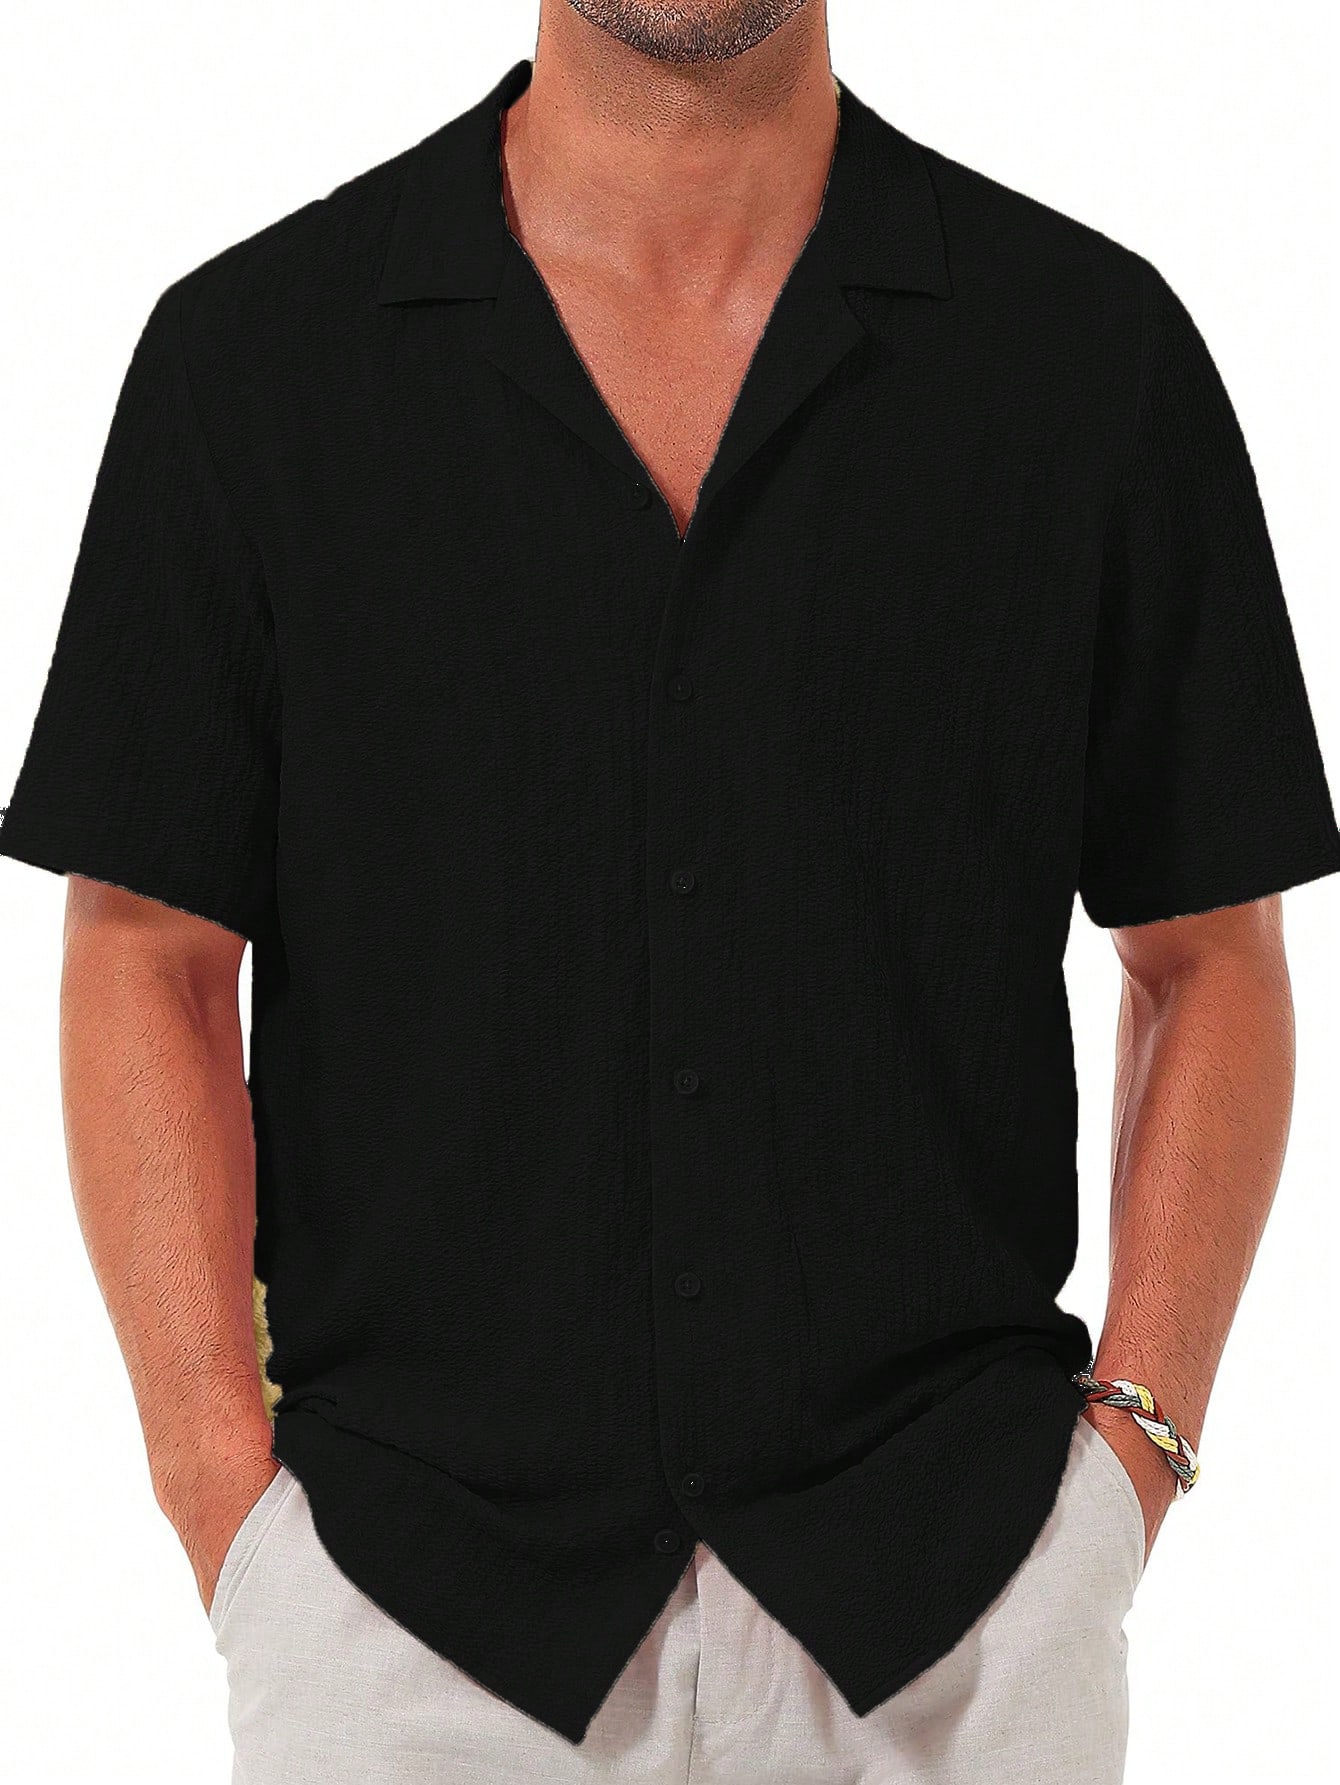 Мужская повседневная рубашка с коротким рукавом на пуговицах, черный рубашка мужская с коротким рукавом льняная хлопковая с пуговицами пляжная одежда для йоги повседневная летняя одежда 2022